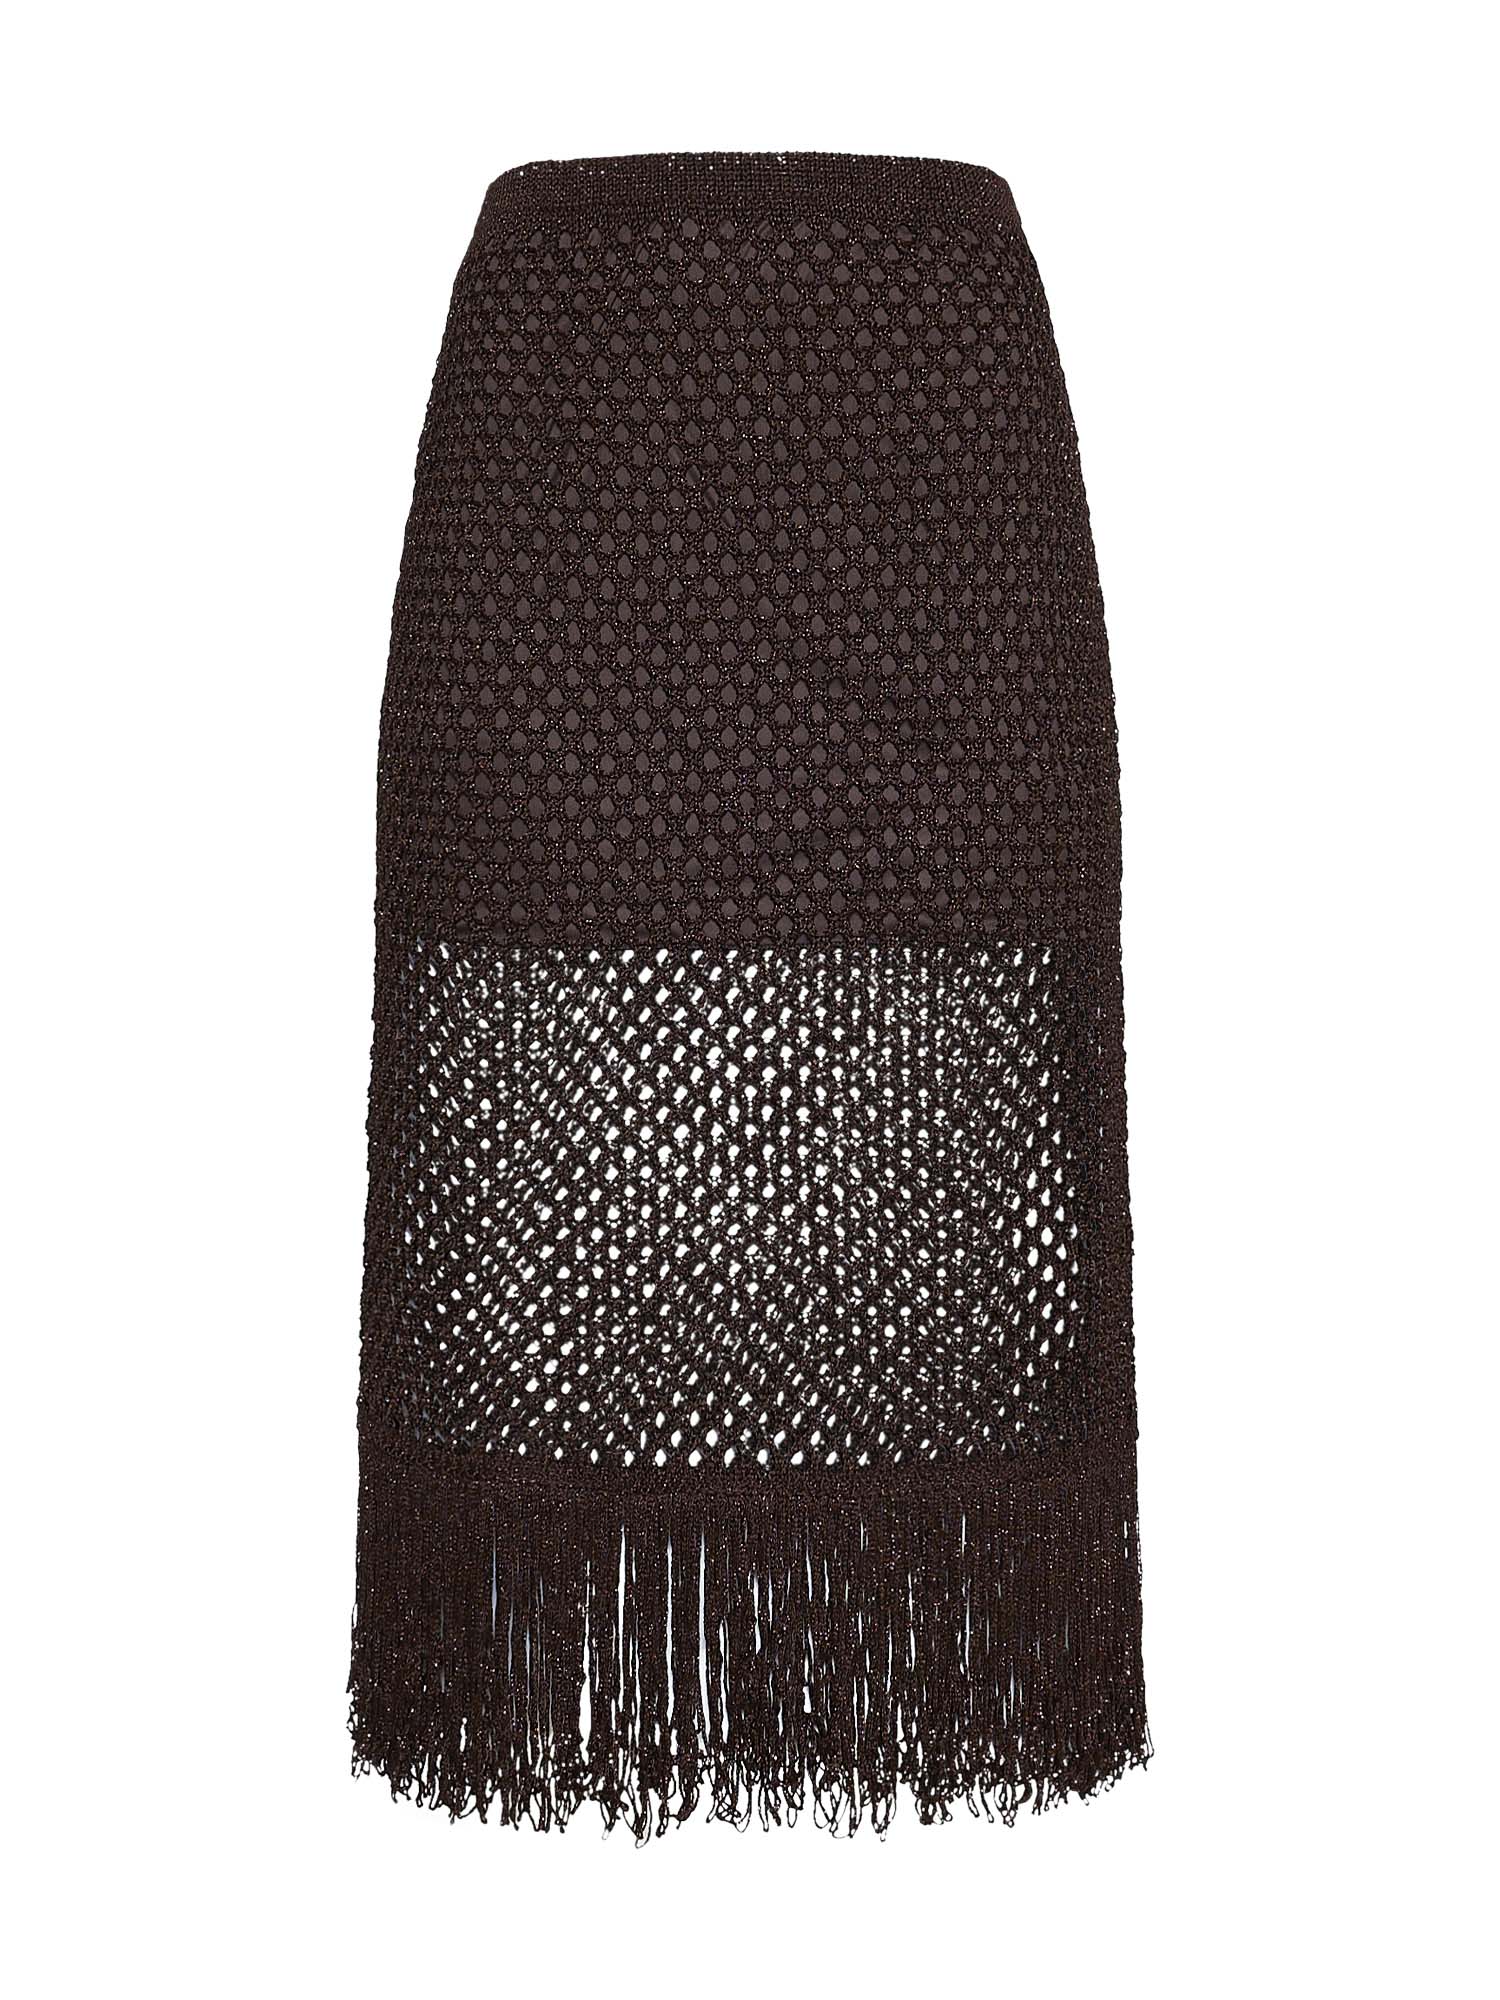 Lurex crochet midi skirt with fringe